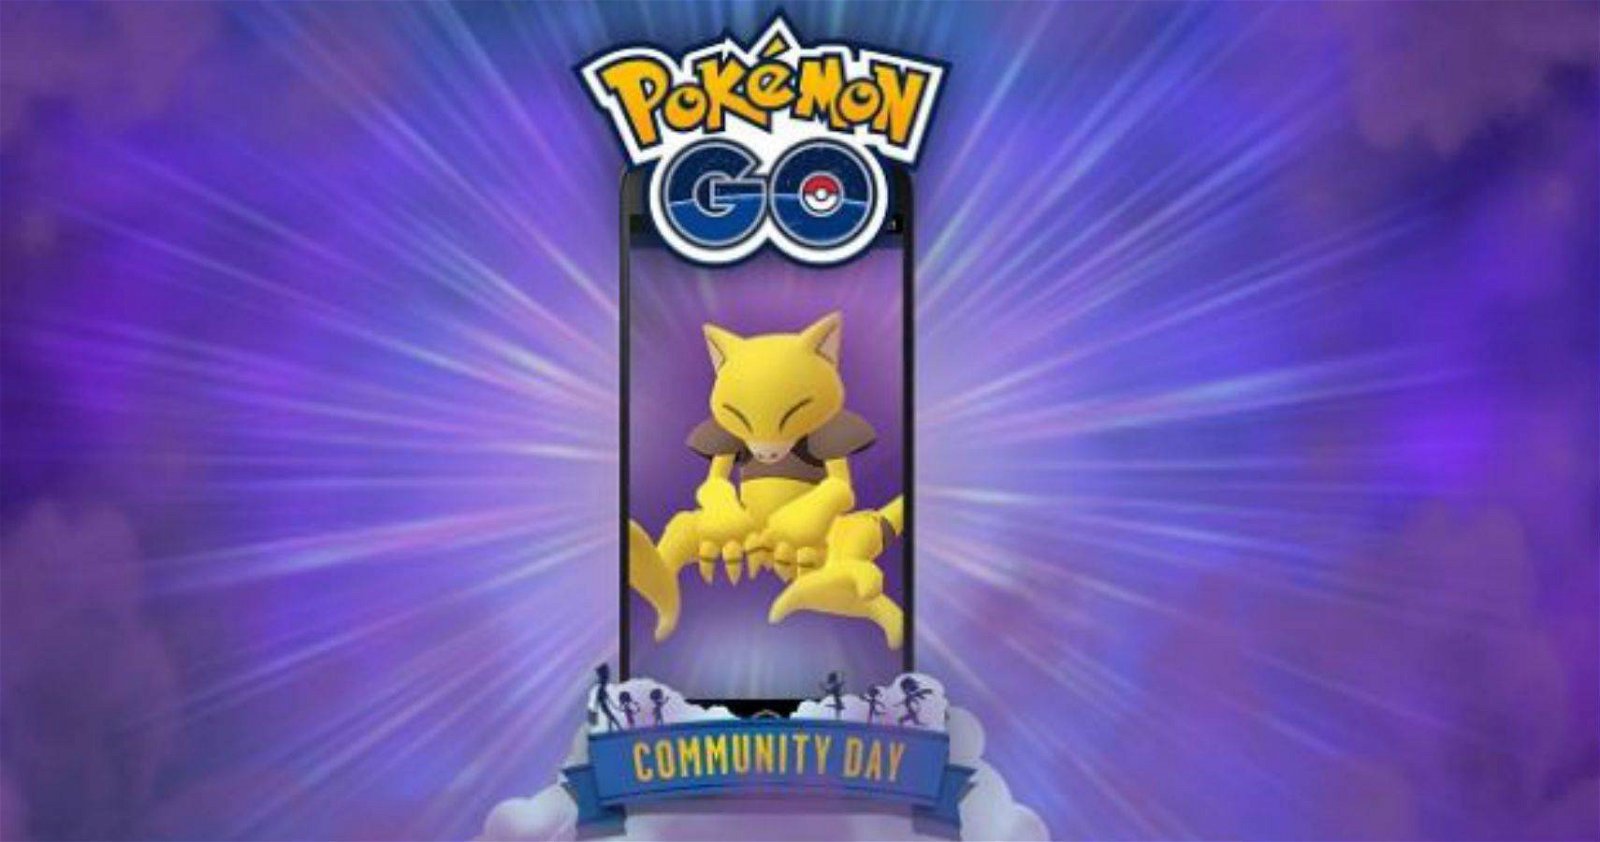 Immagine di Pokémon GO: il Community Day di Abra sarà giocabile da casa, maggiori dettagli sull'evento